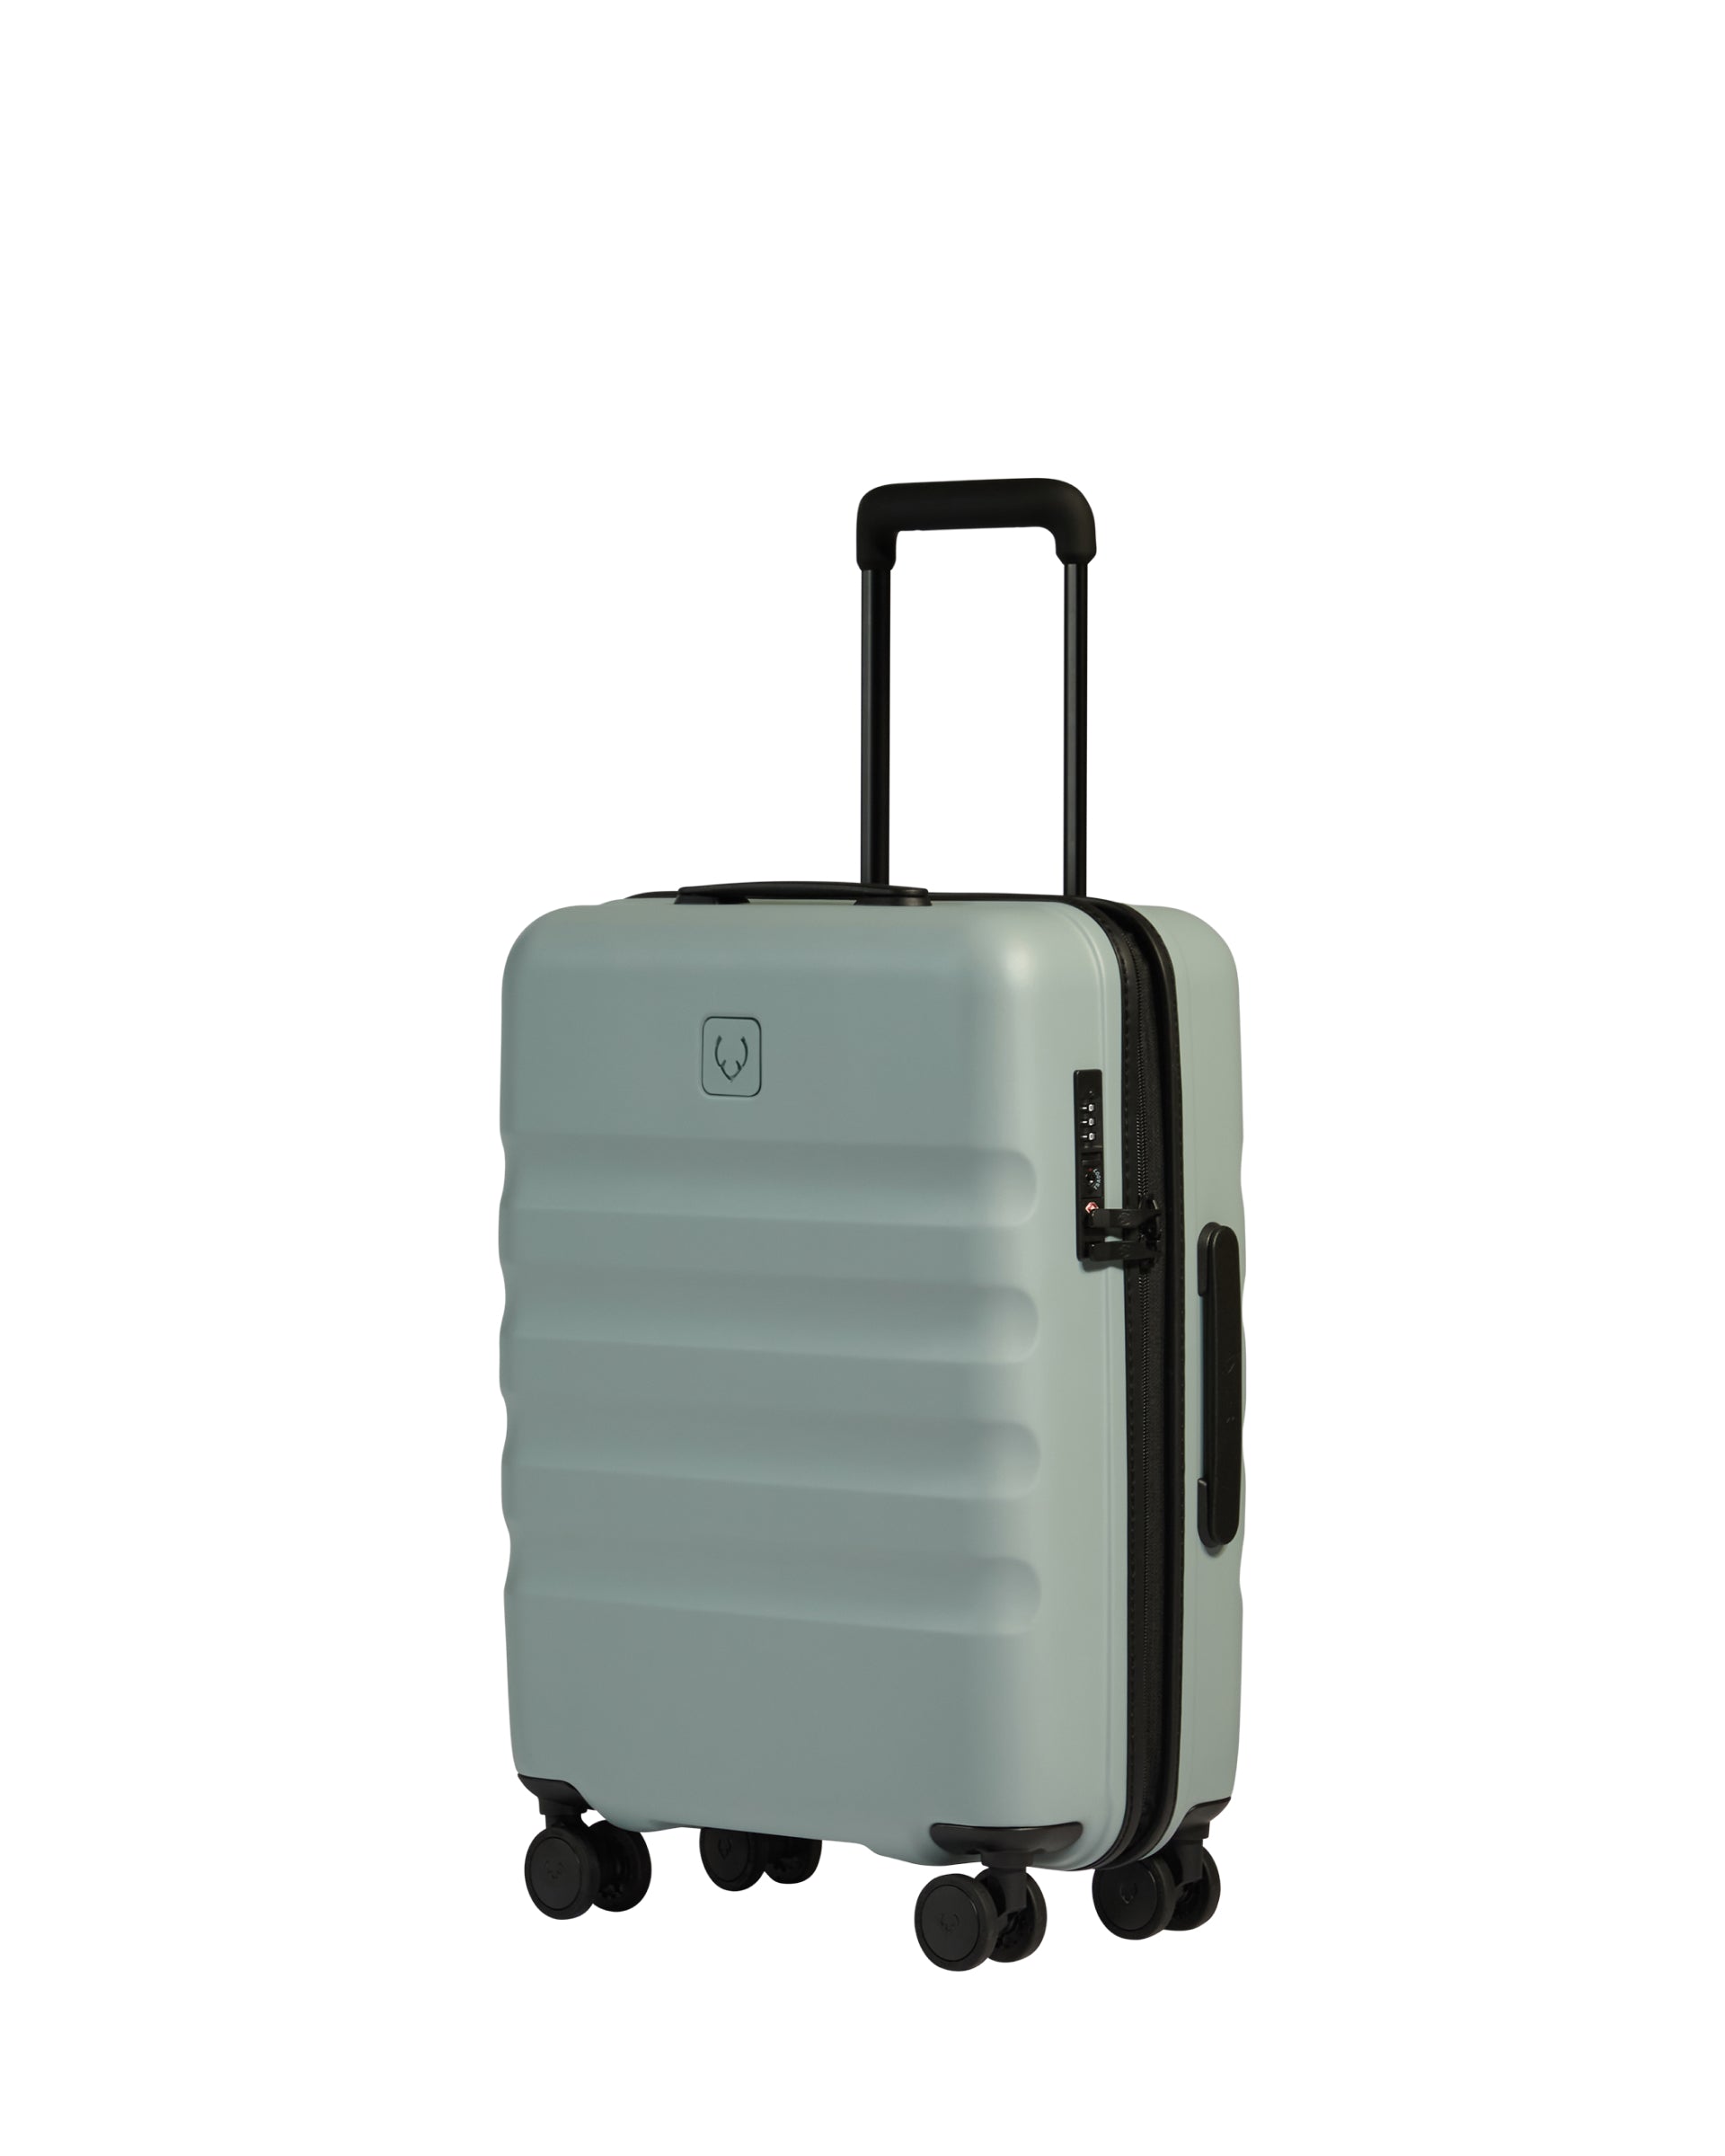 View Antler Icon Stripe Cabin Suitcase In Mist Blue Size 20cm x 55cm x 40cm information